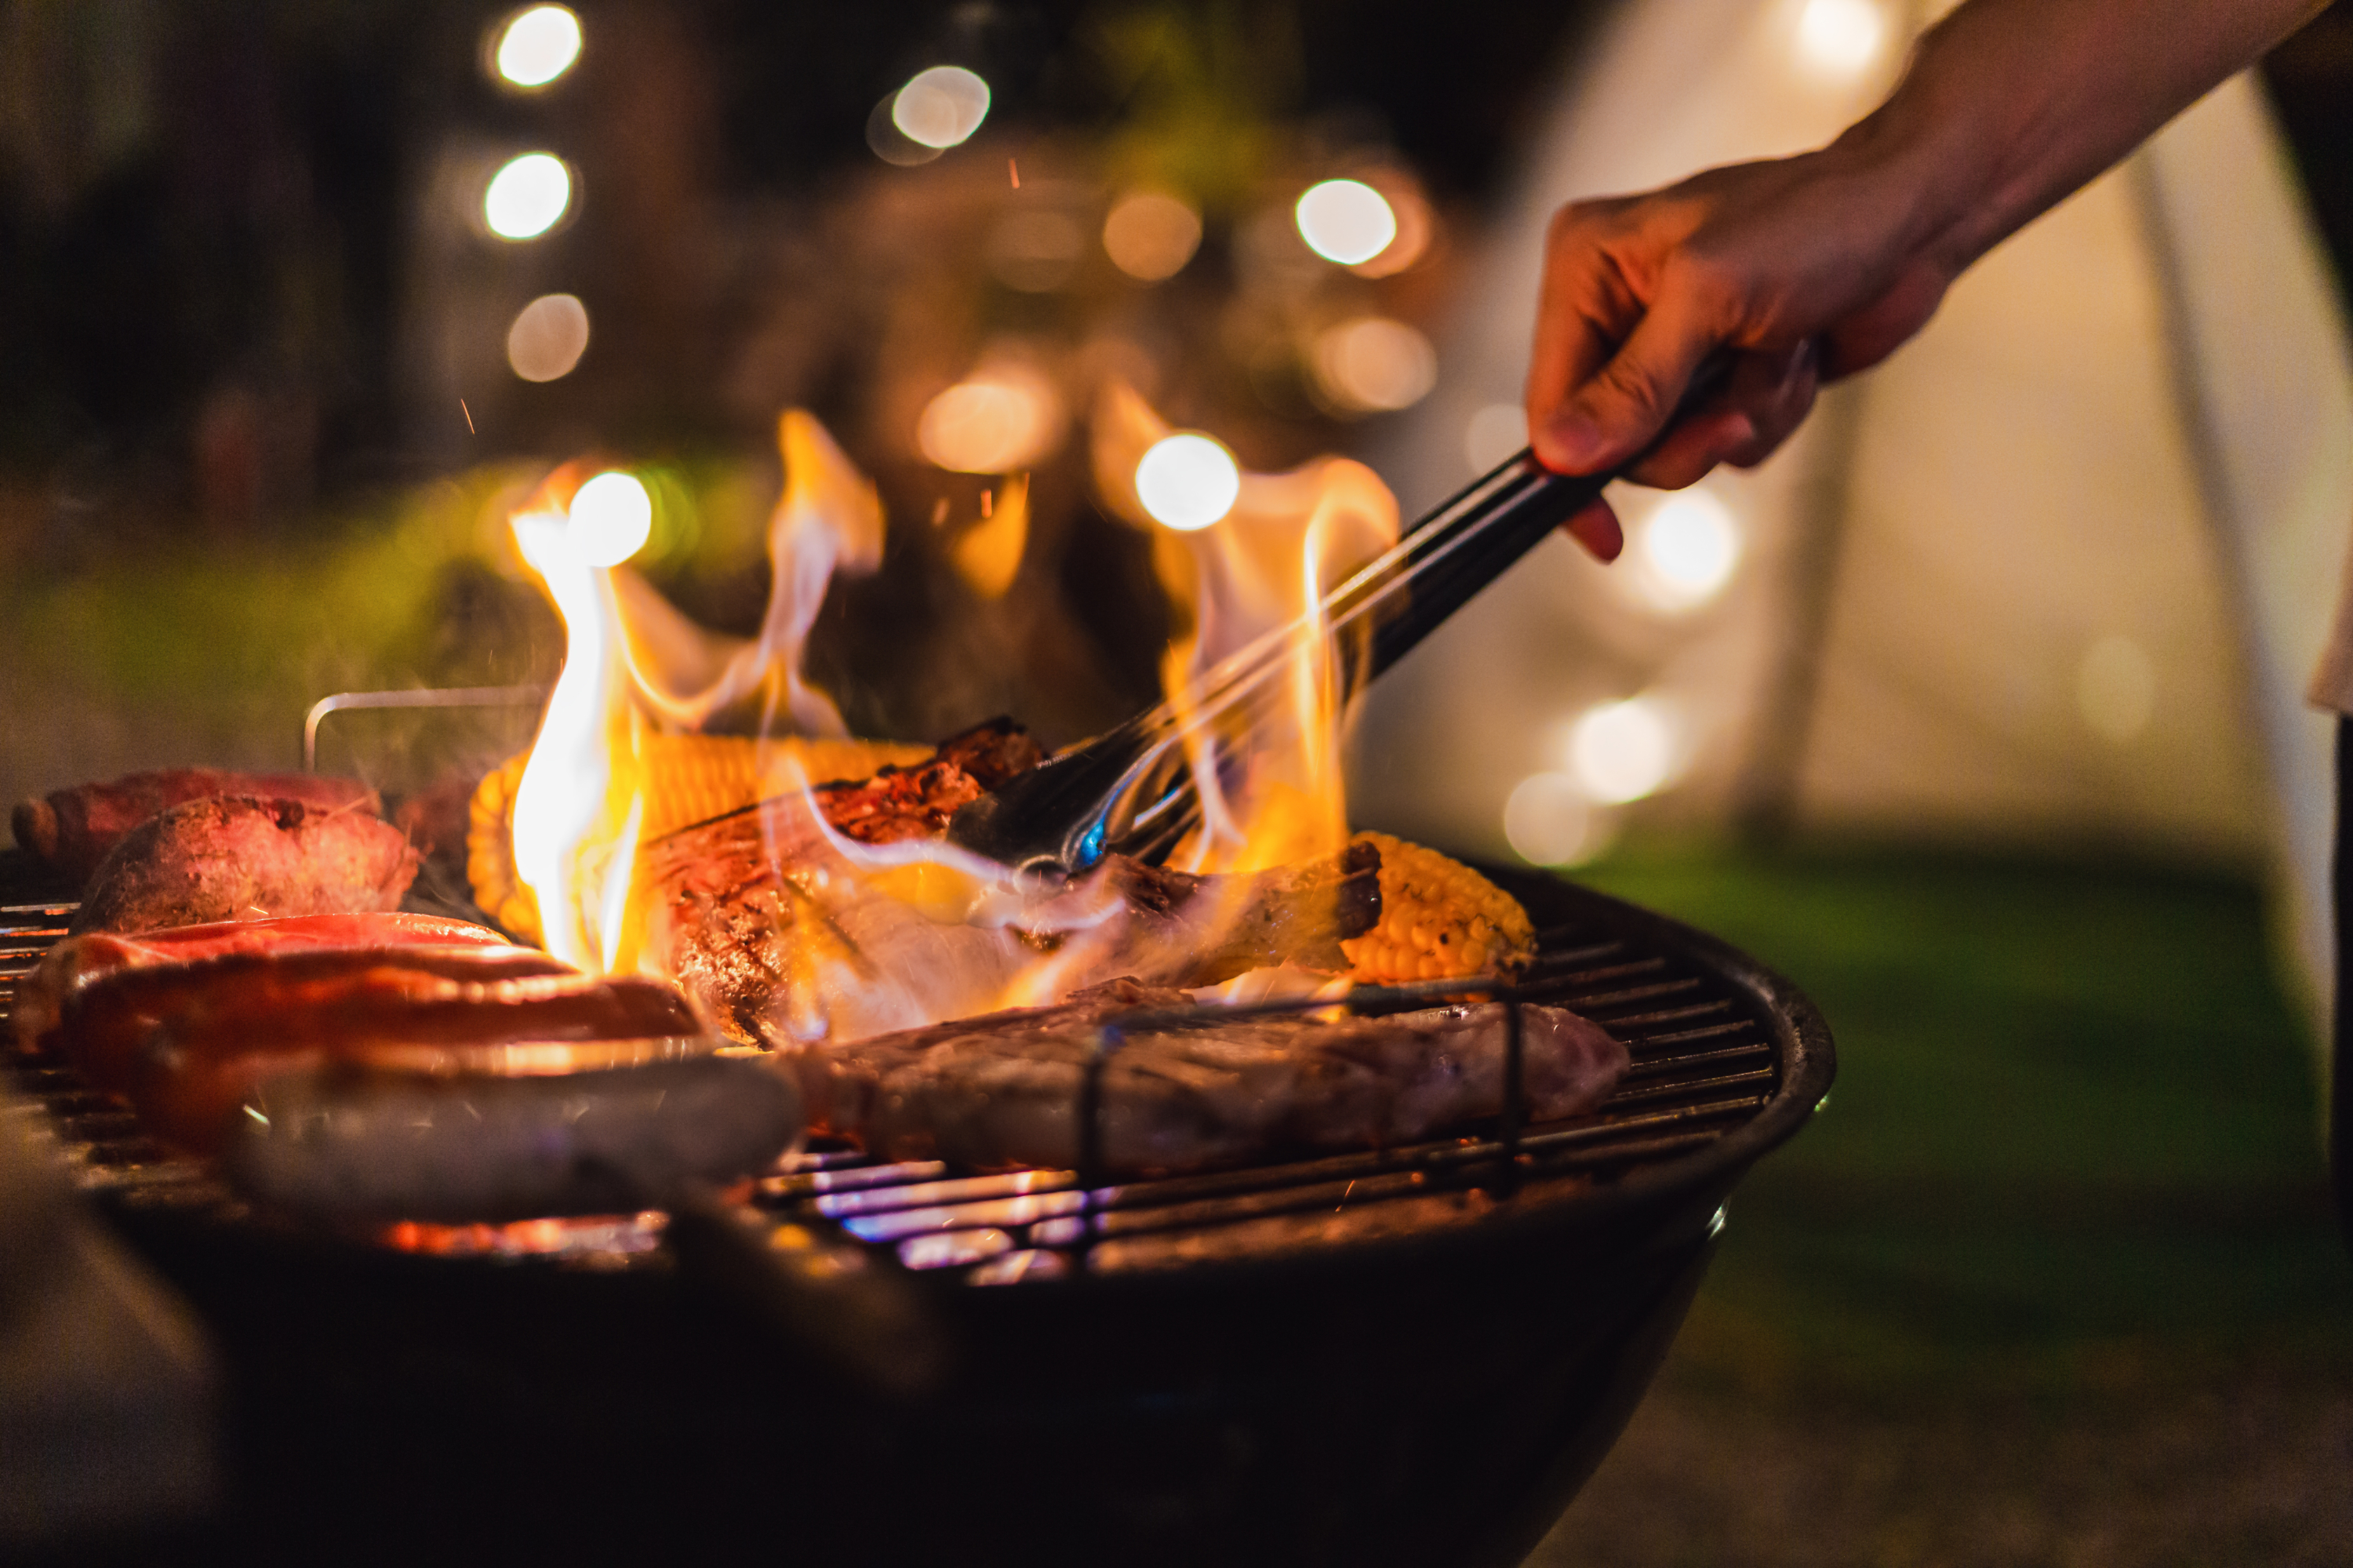 À ce jour, aucune loi ne réglemente l'utilisation d'un barbecue. © Peera, Adobe Stock